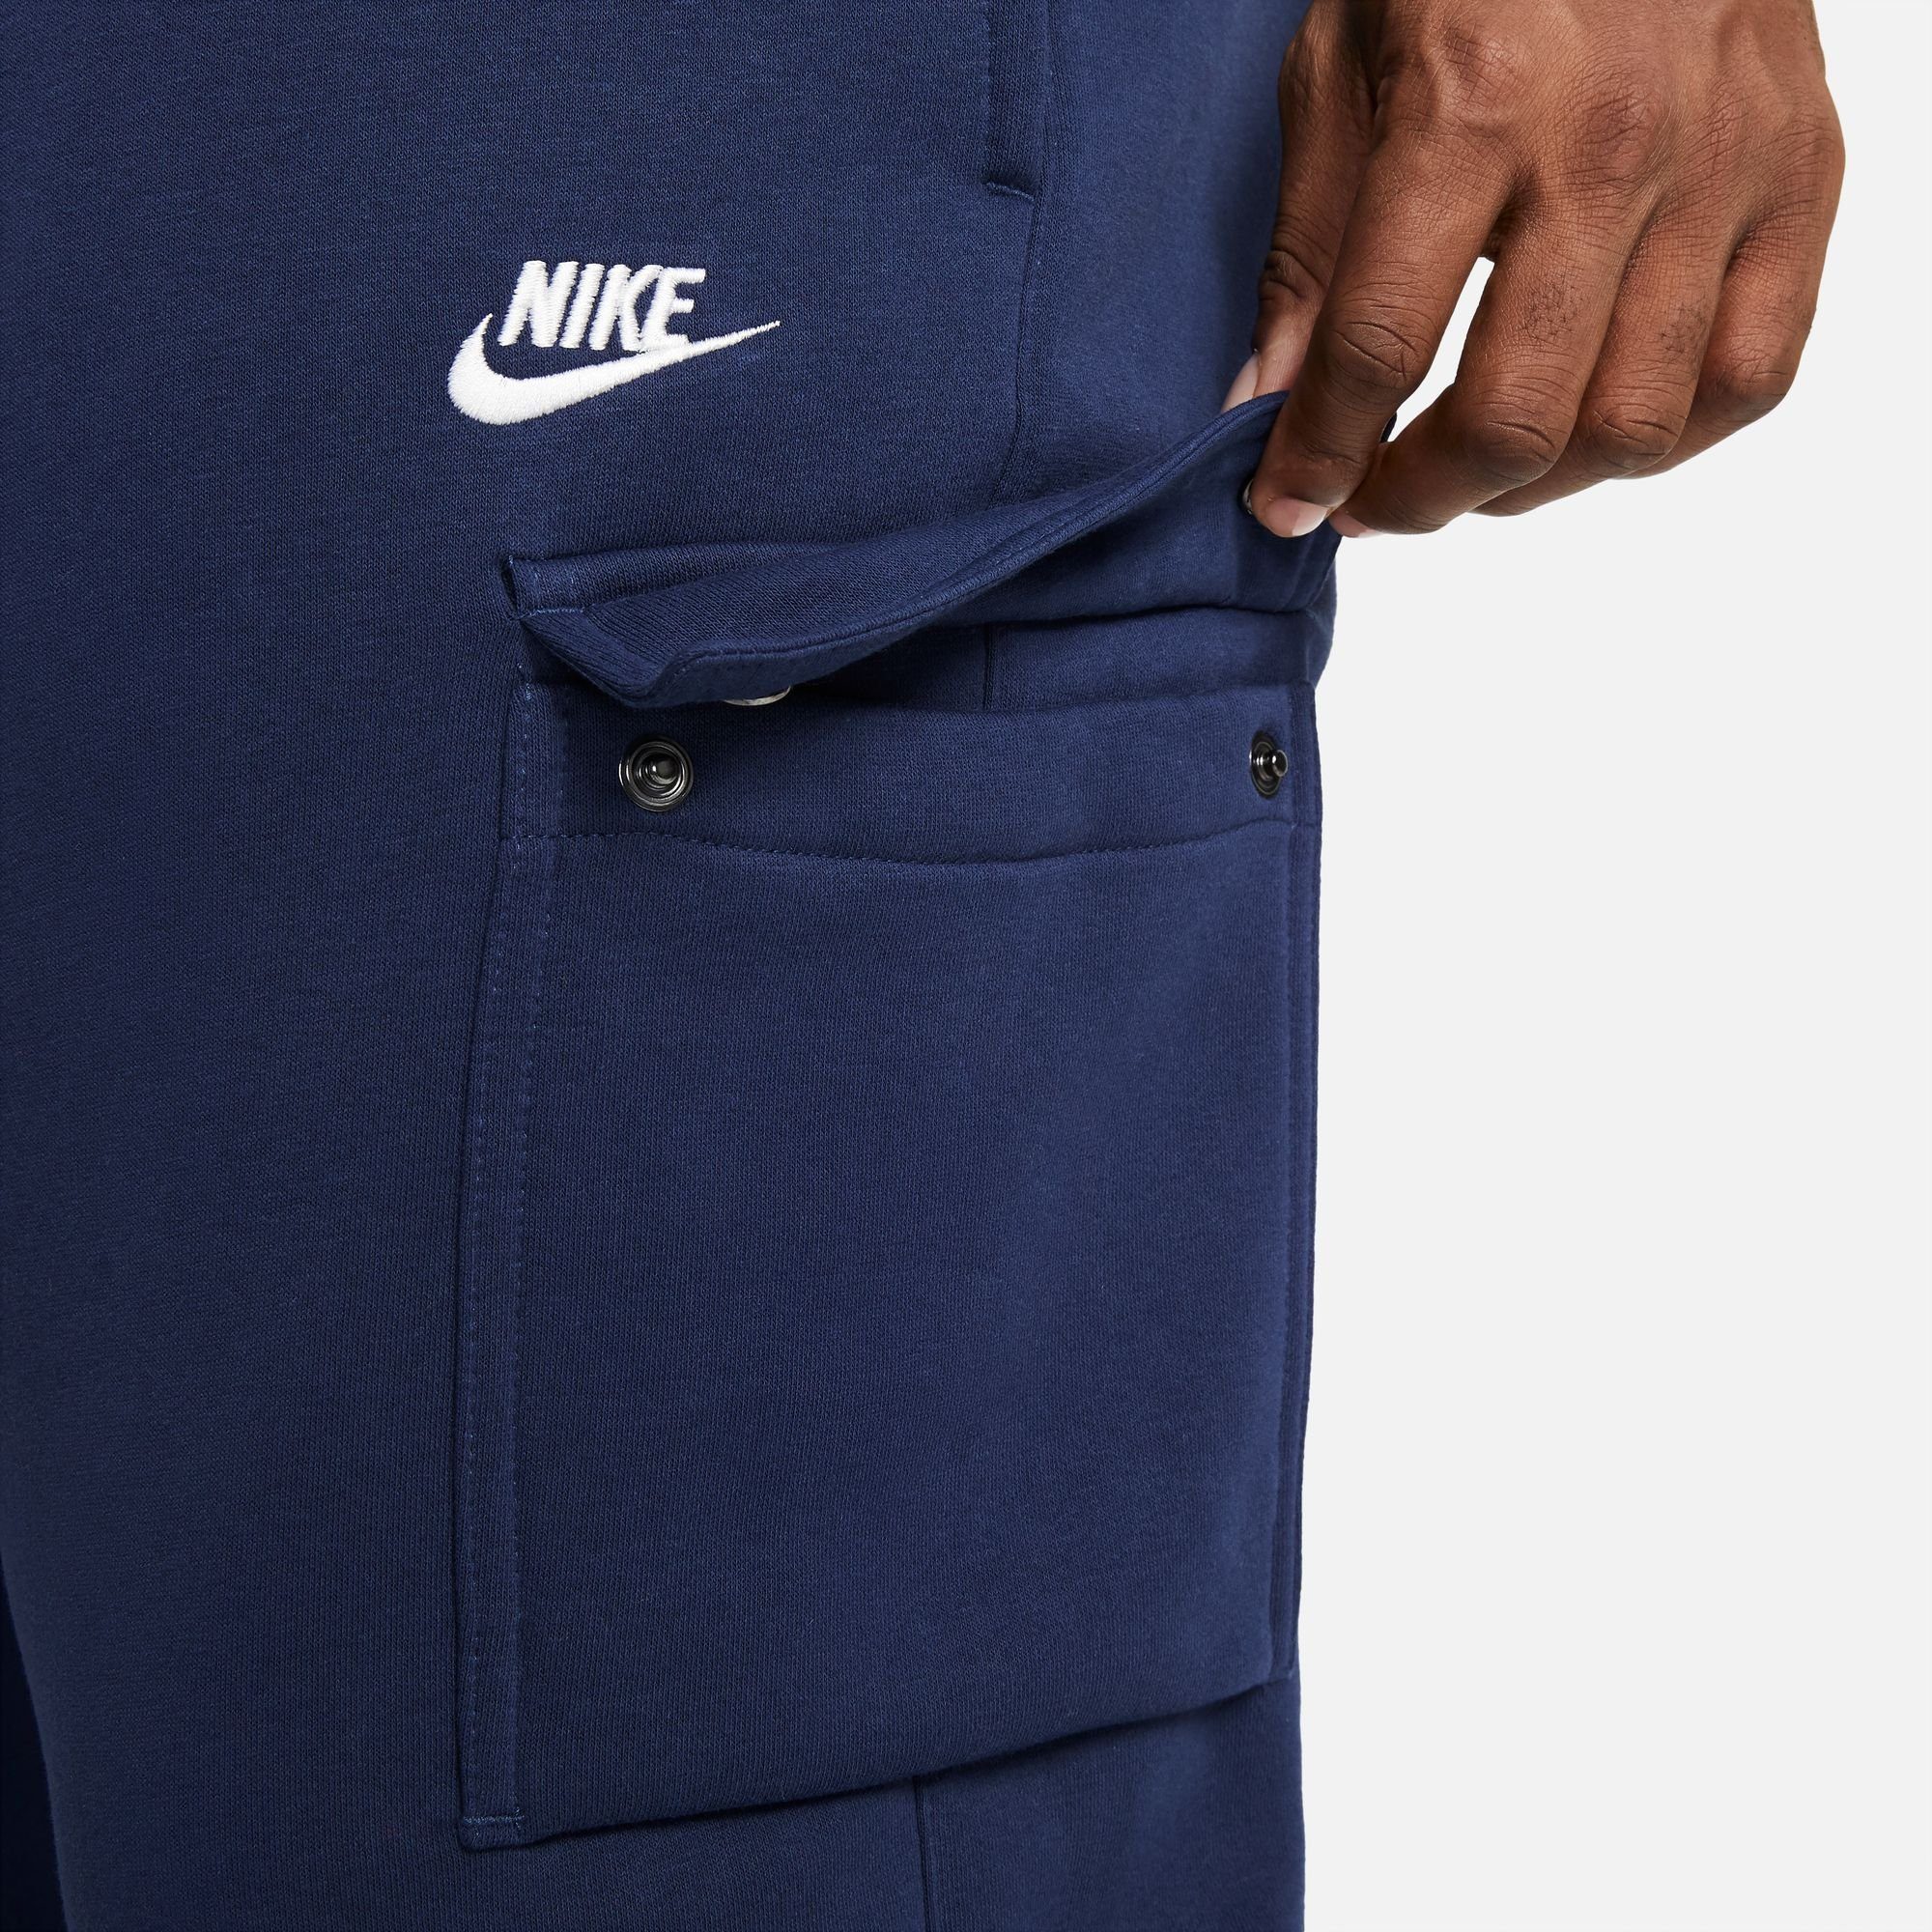 Jogginghose Sportswear FLEECE Nike marine MEN'S CARGO PANTS CLUB